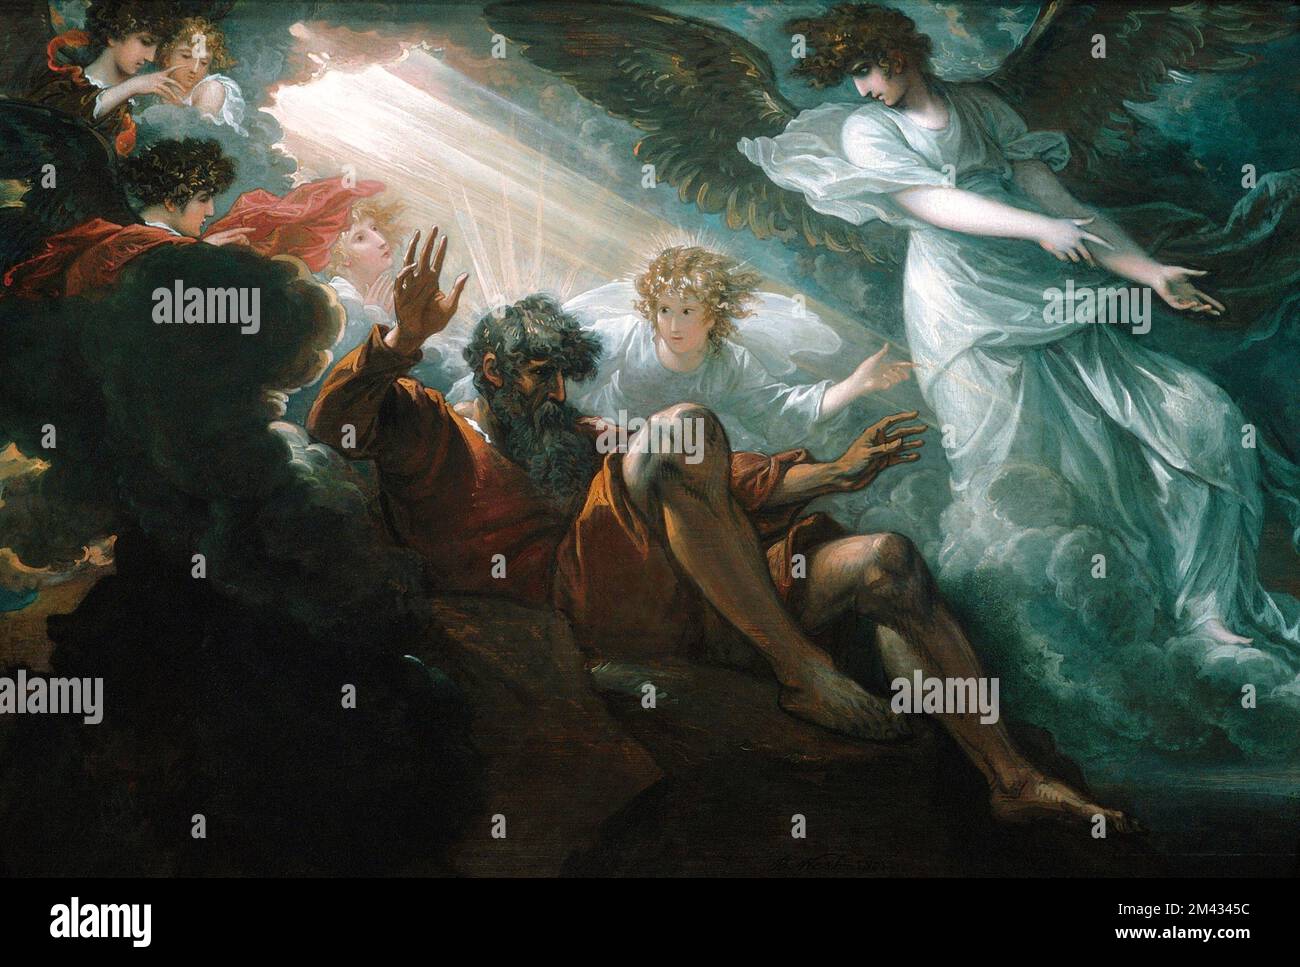 Moïse a montré la Terre promise par Benjamin West (1738-1820), huile sur bois, 1801. Ceci est une esquisse préparatoire pour une plus grande peinture . Banque D'Images